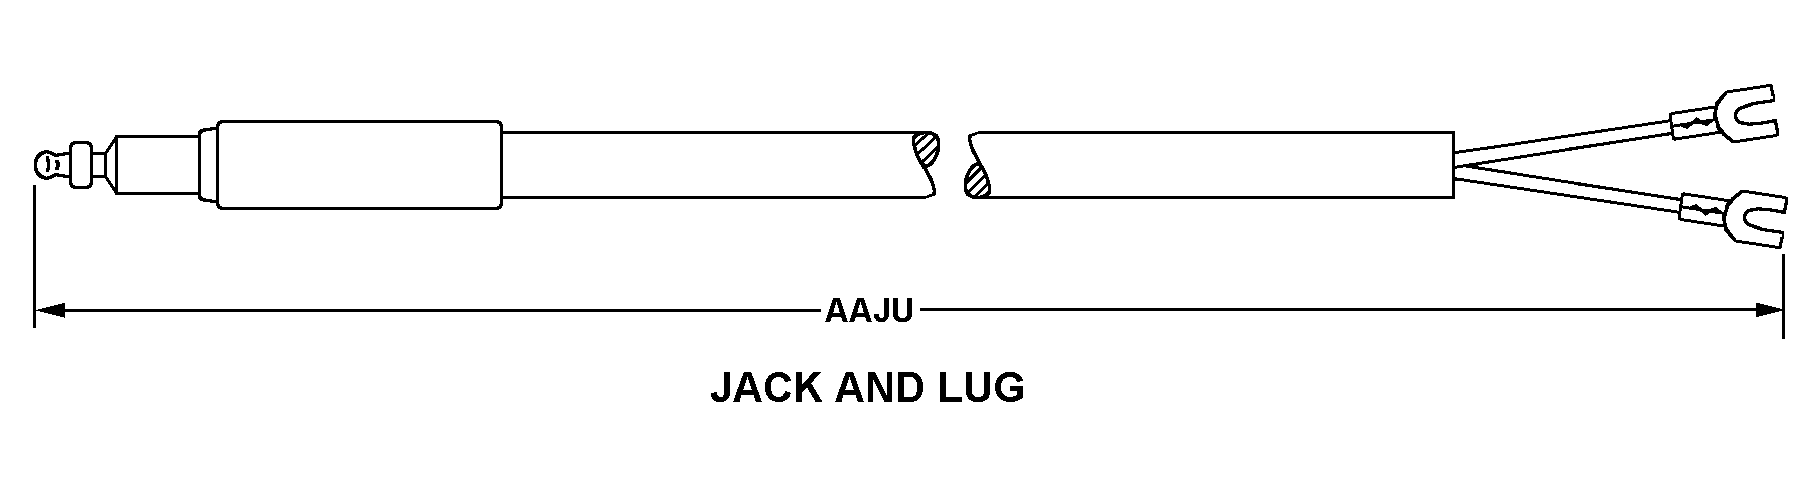 JACK AND LUG style nsn 6150-00-905-6013